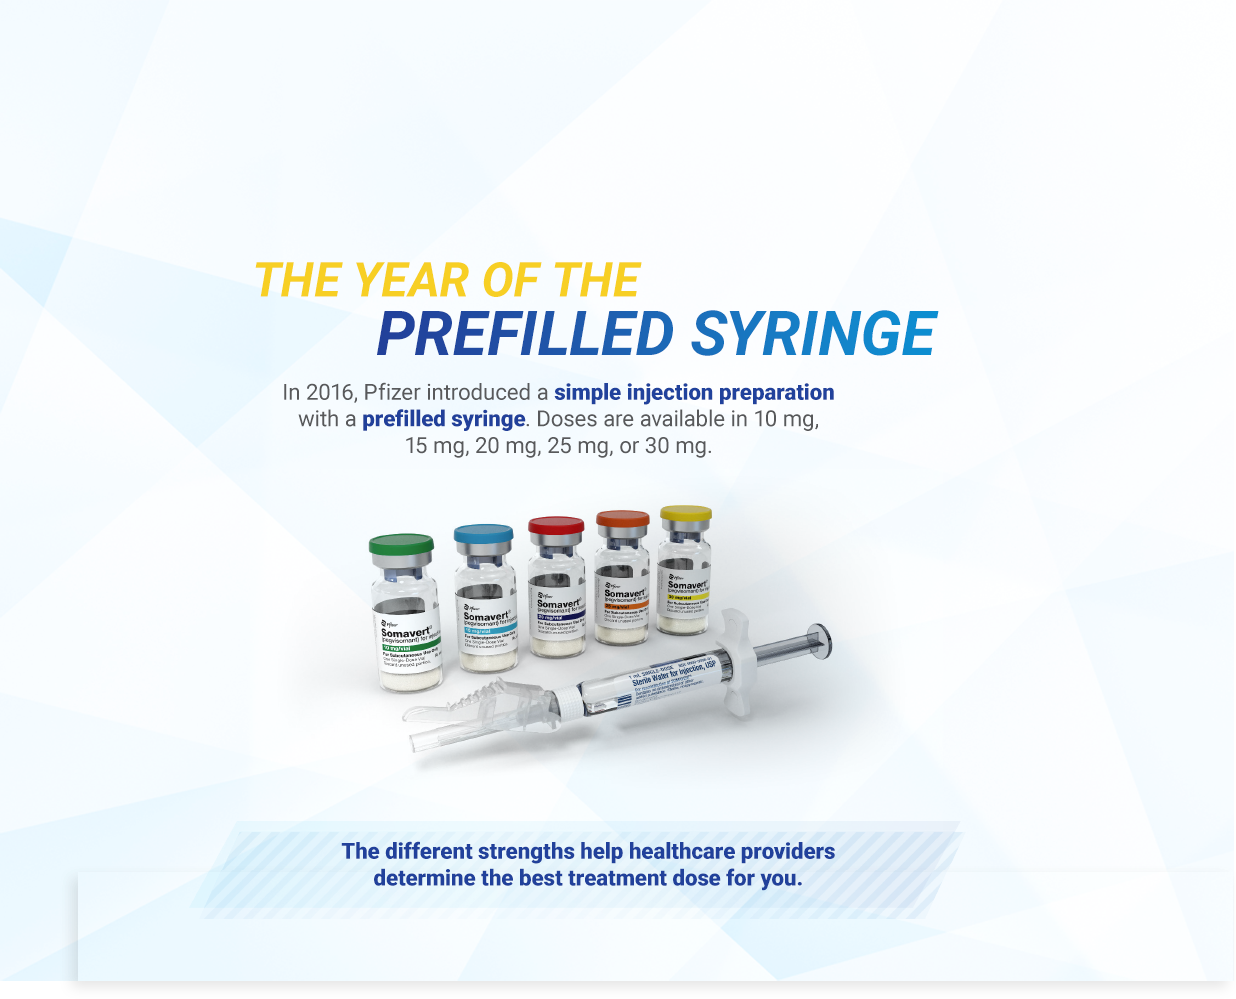 Prefilled syringe  banner with 5 vials of SOMAVERT 10 mg, 15 mg, 20 mg, 25 mg, and 30 mg with syringe